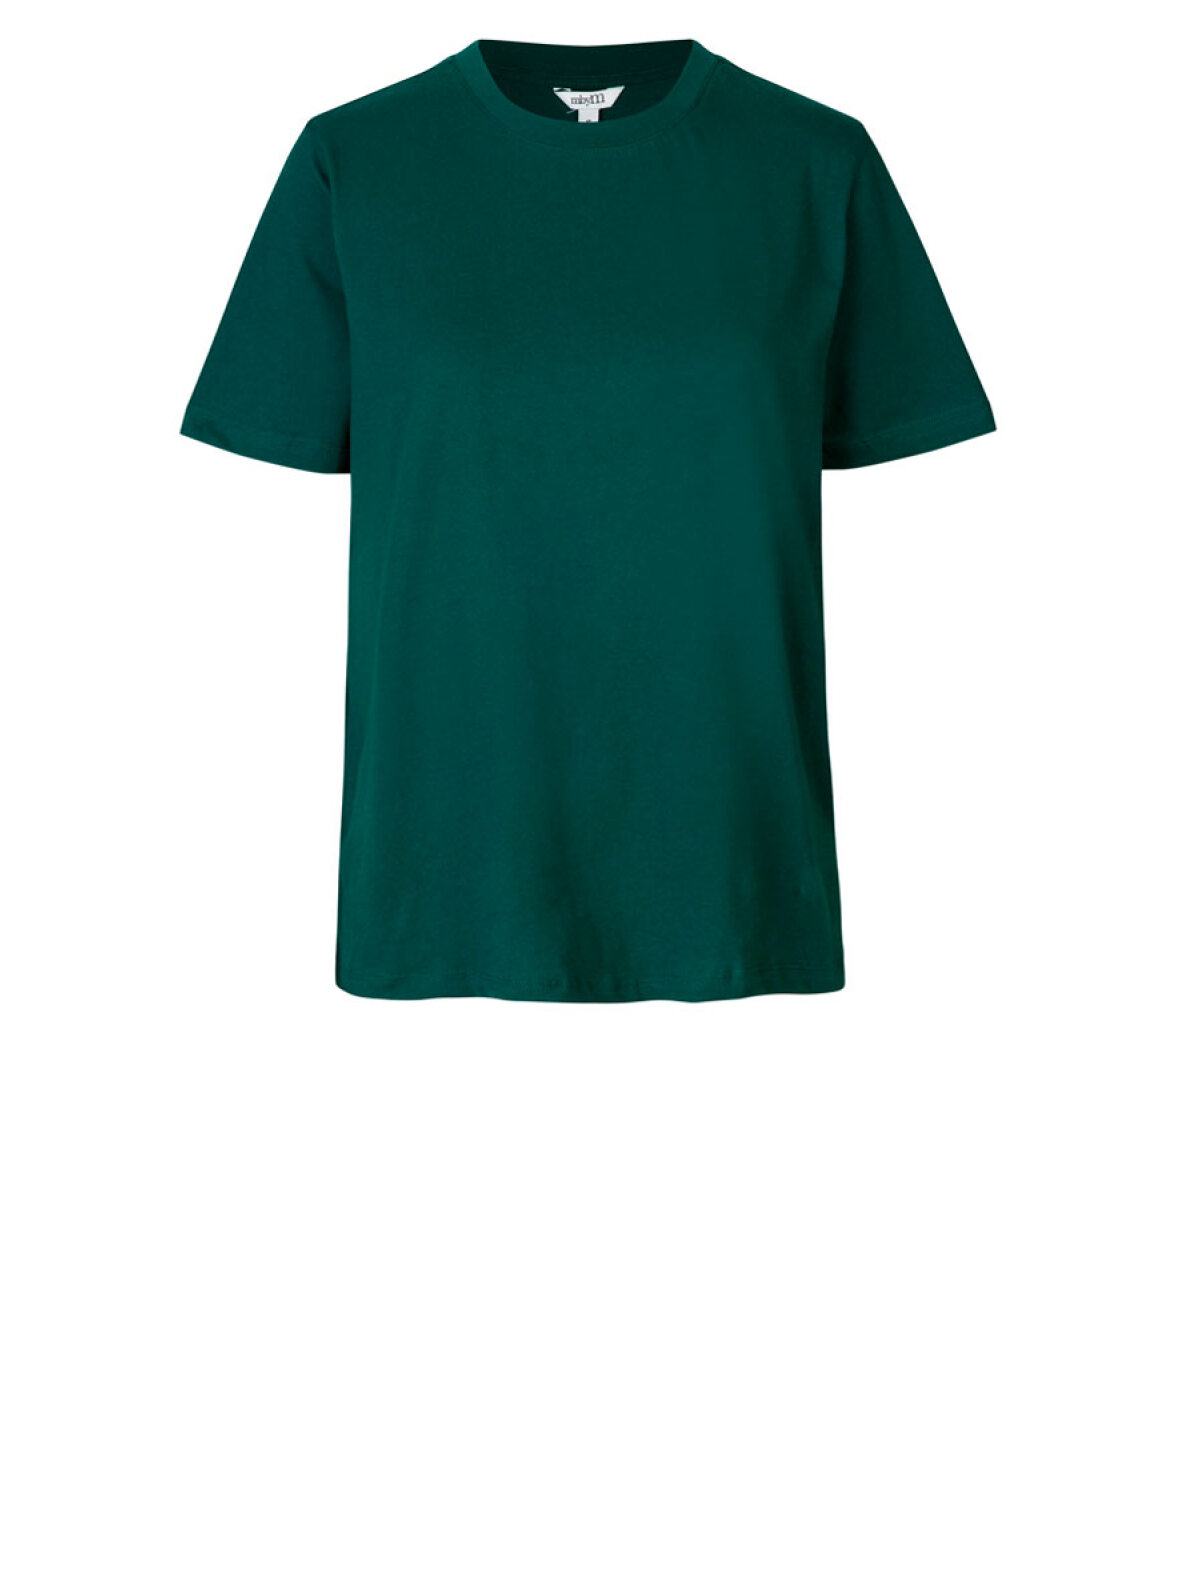 Eventyrer intellektuel Midlertidig A'POKE - MbyM Beeja T-shirt Pine Grove - Shop mørkegrøn t-shirt